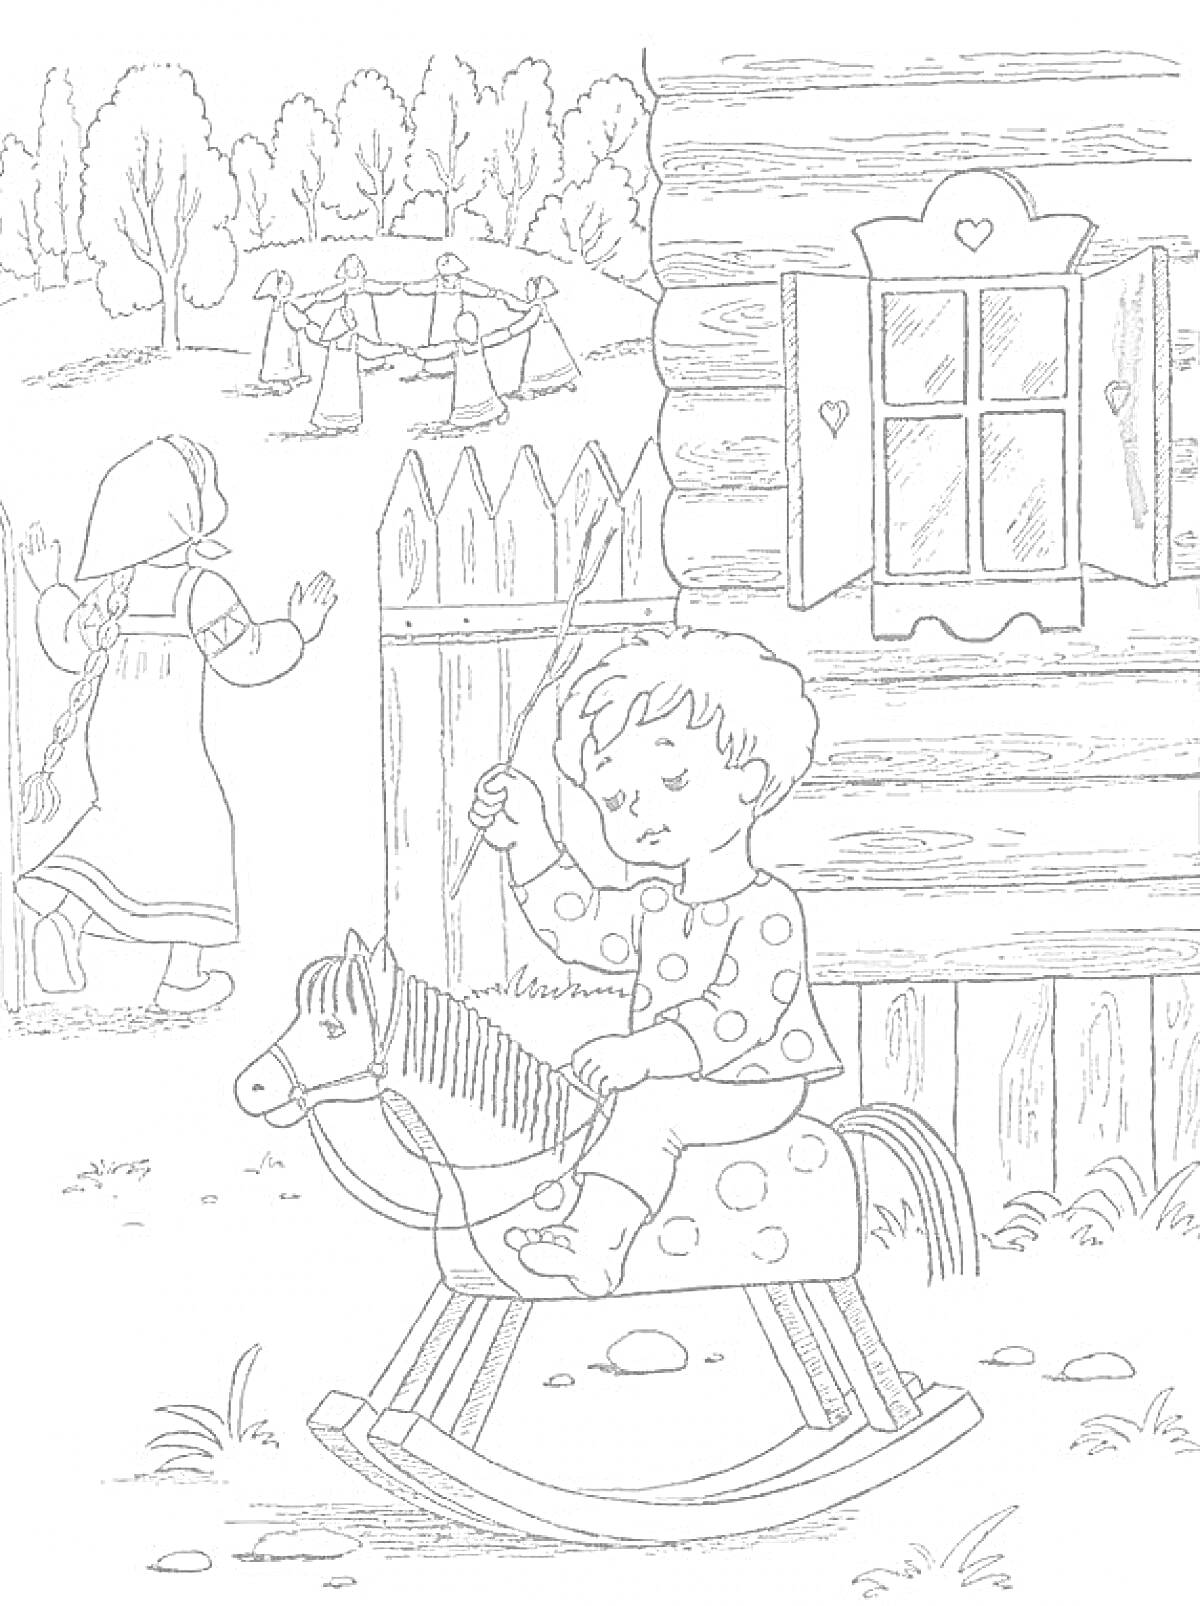 Мальчик на деревянной лошадке перед деревянным домом, девочка в платке у забора, дети играют в хоровод на фоне леса